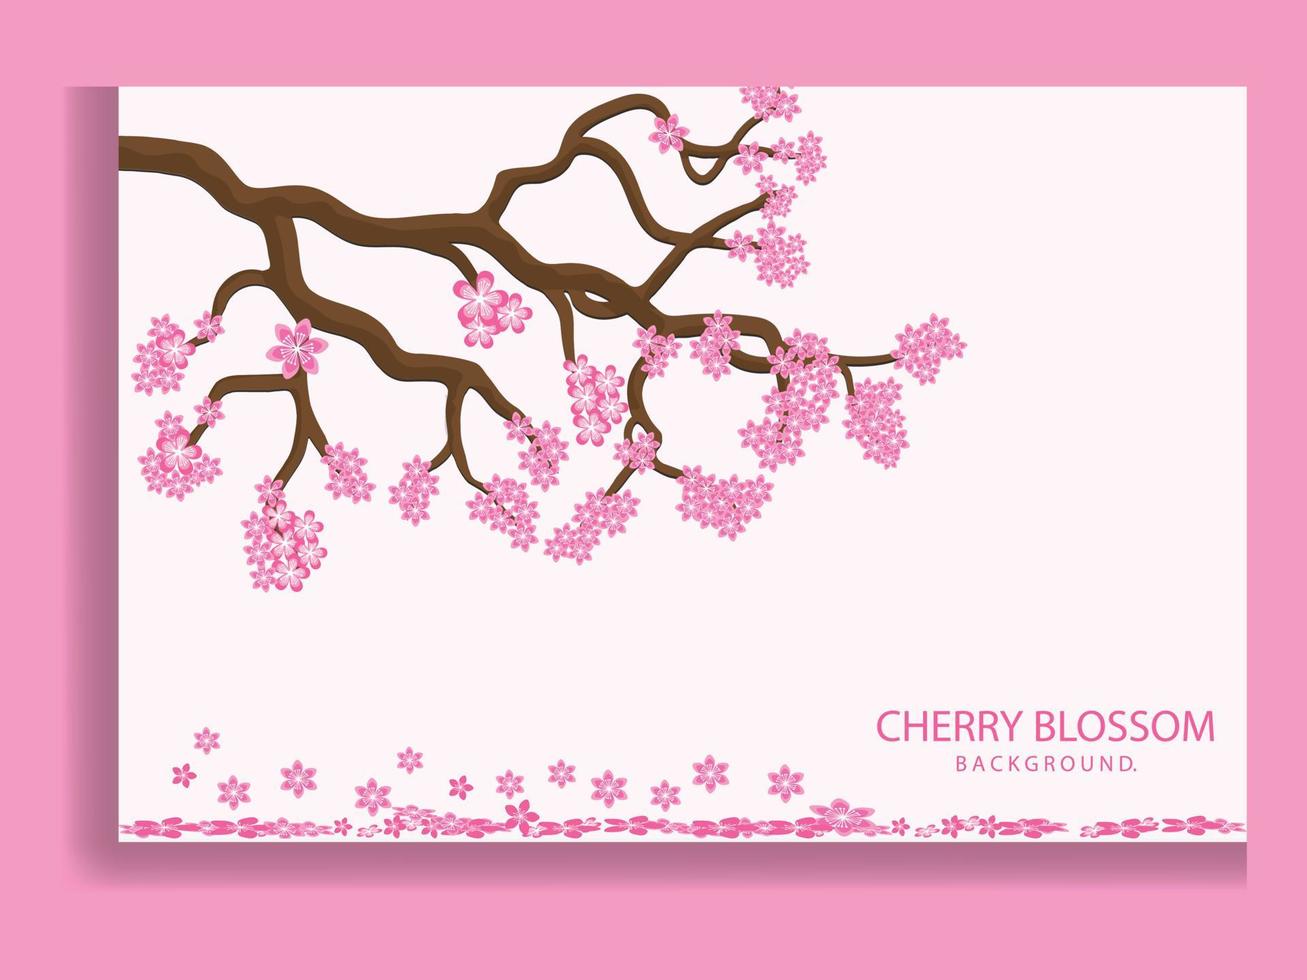 Sakura-Blütenzweig. fallende Blütenblätter, Blumen. isolierte fliegende realistische japanische rosa kirsch- oder aprikosenblumenelemente fallen vektorhintergrund herunter. kirschblütenzweig, blütenblattillustration vektor